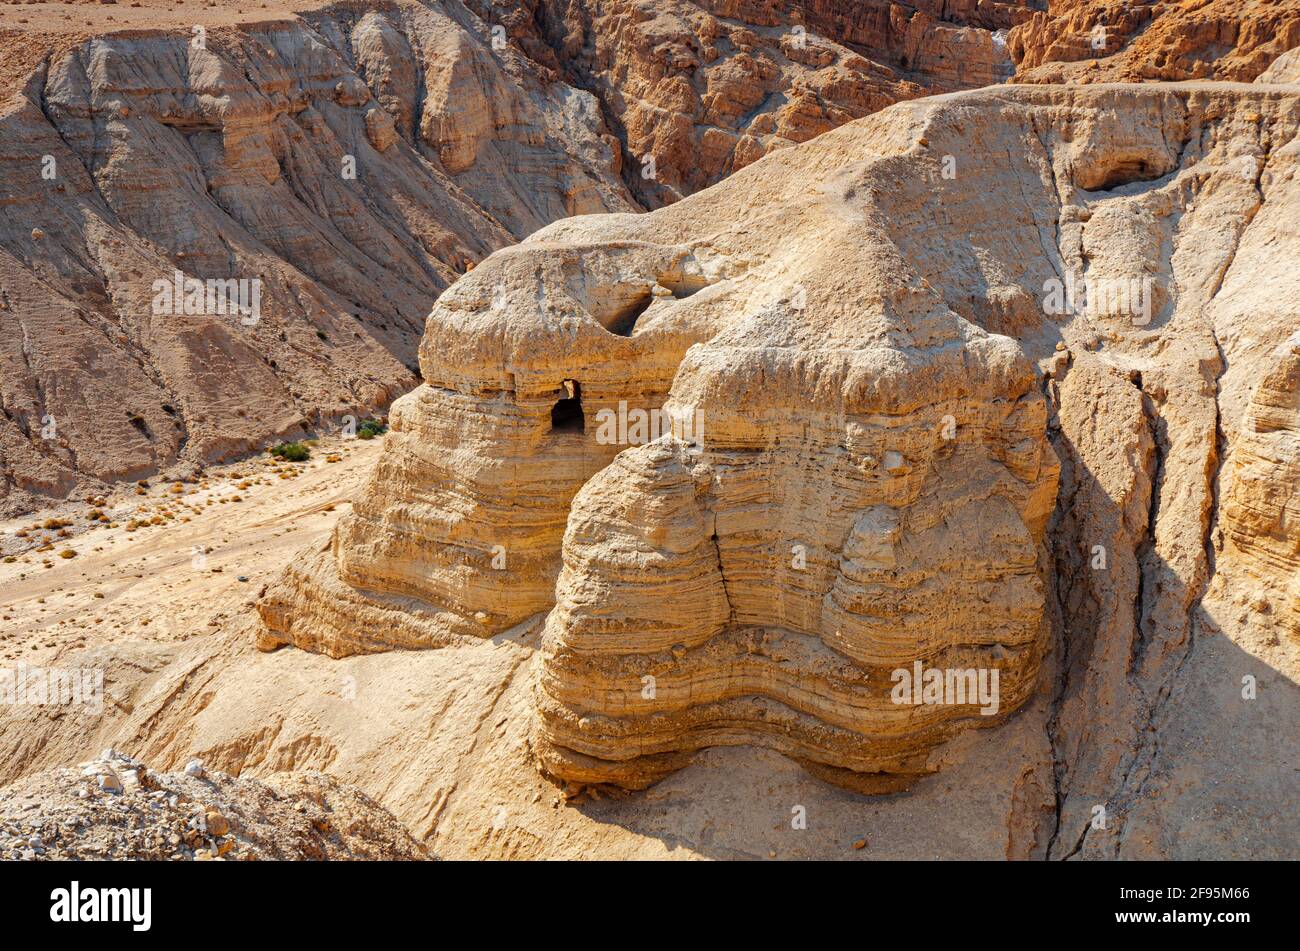 Grotte des manuscrits de la mer Morte, connue sous le nom de grotte de Qumran 4, l'une des grottes dans lesquelles les manuscrits ont été trouvés aux ruines de Khirbet Qumran dans le désert de Banque D'Images